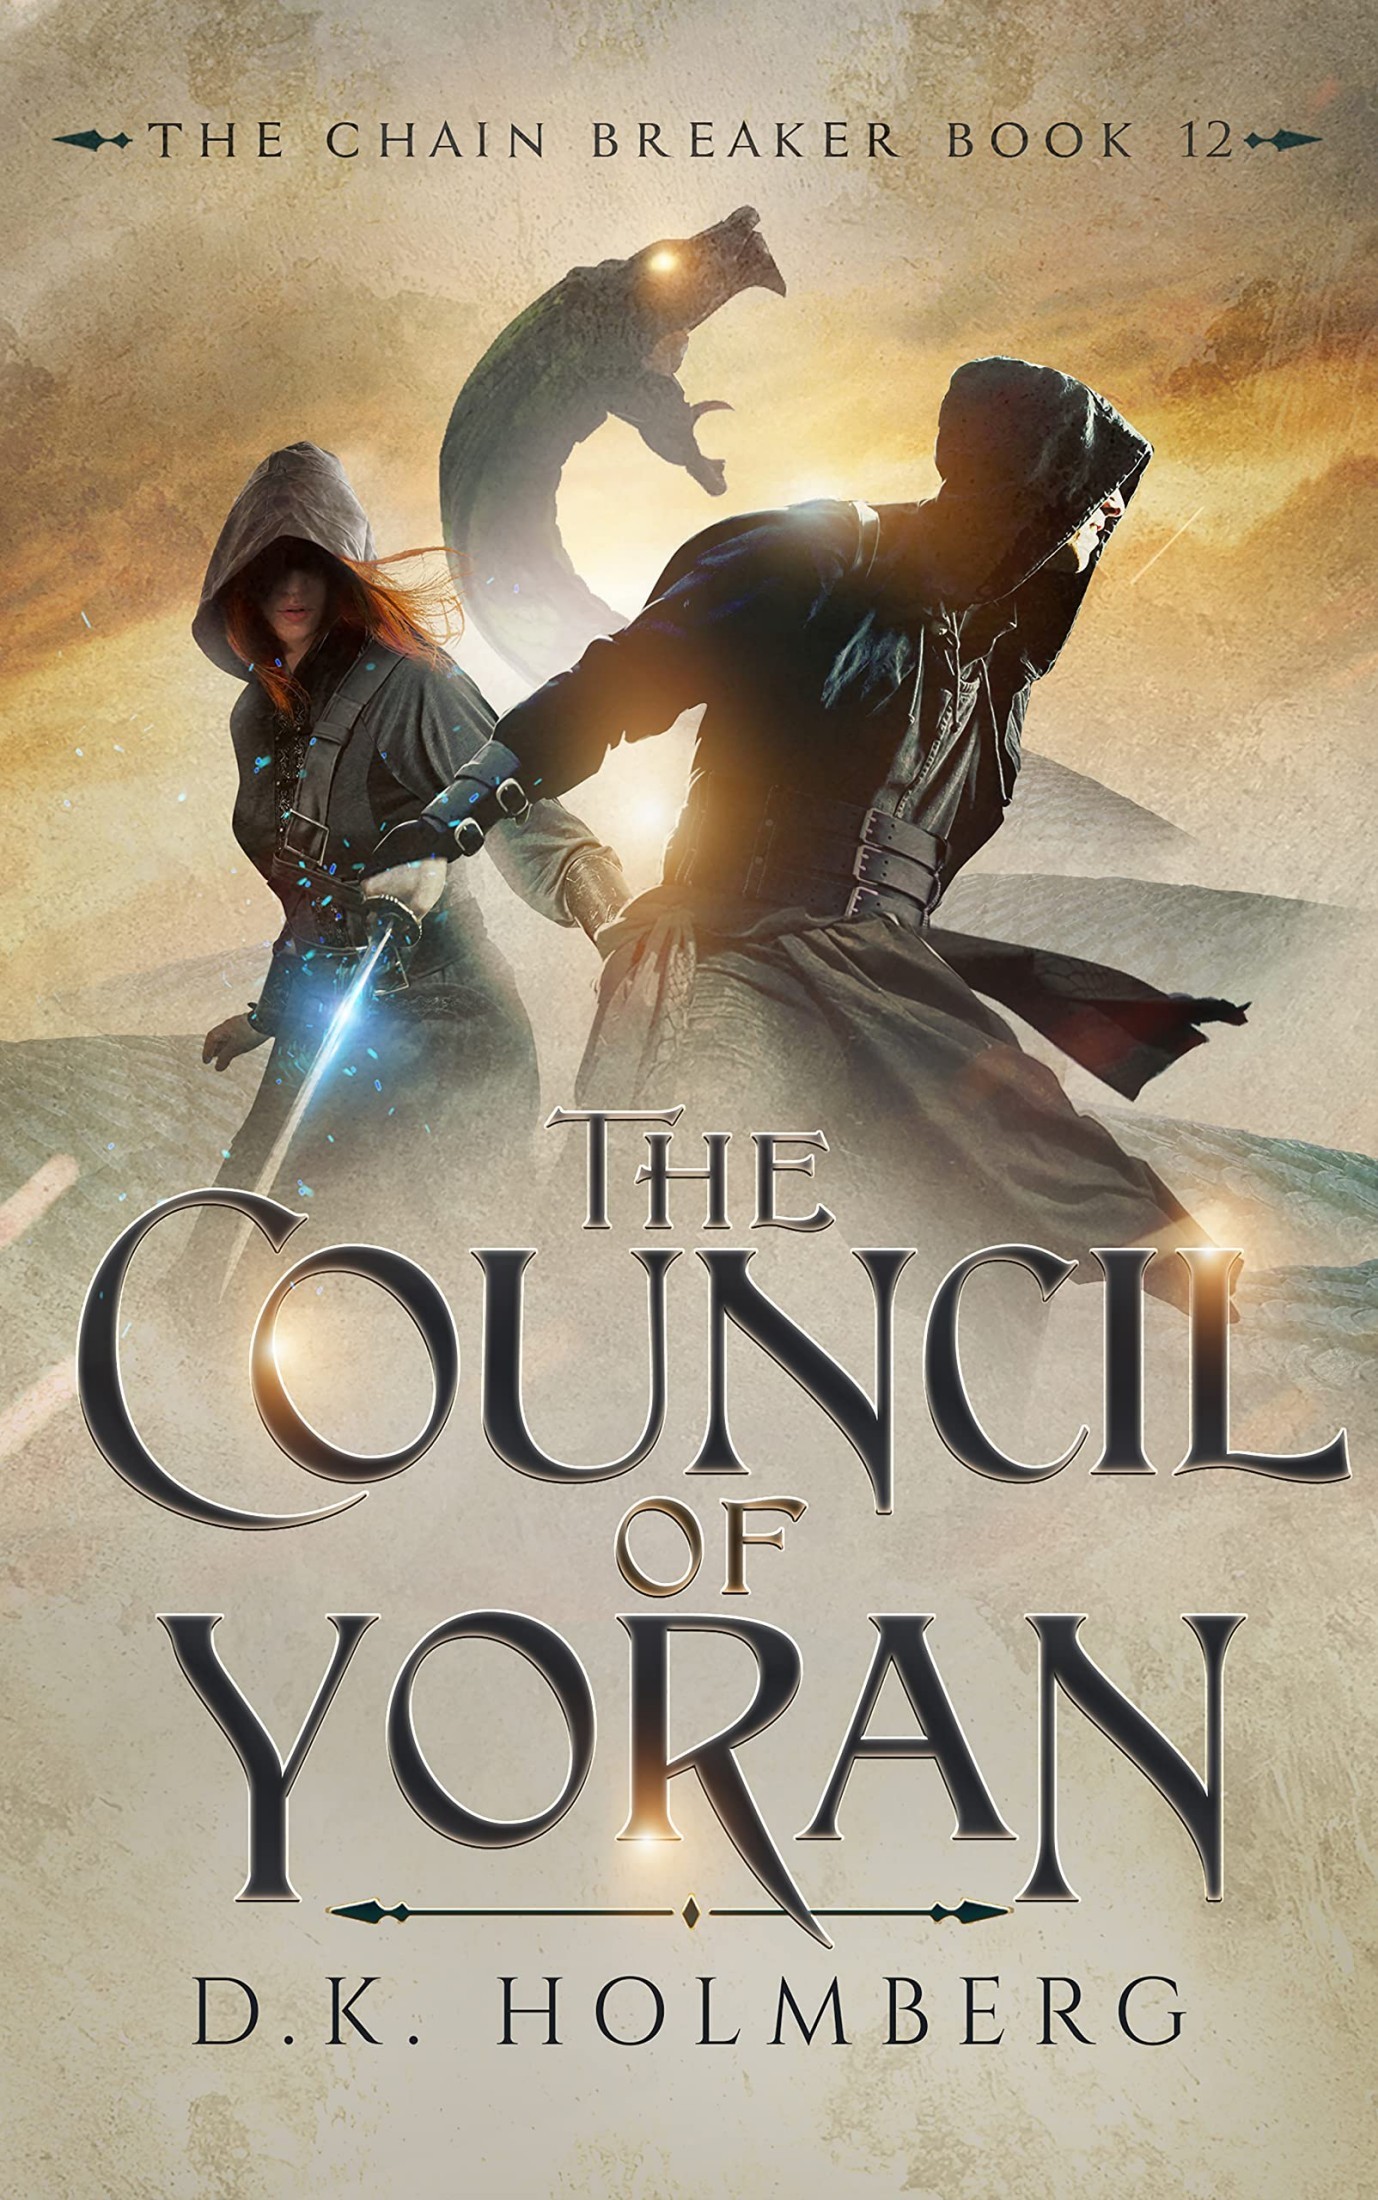 The Council of Yoran